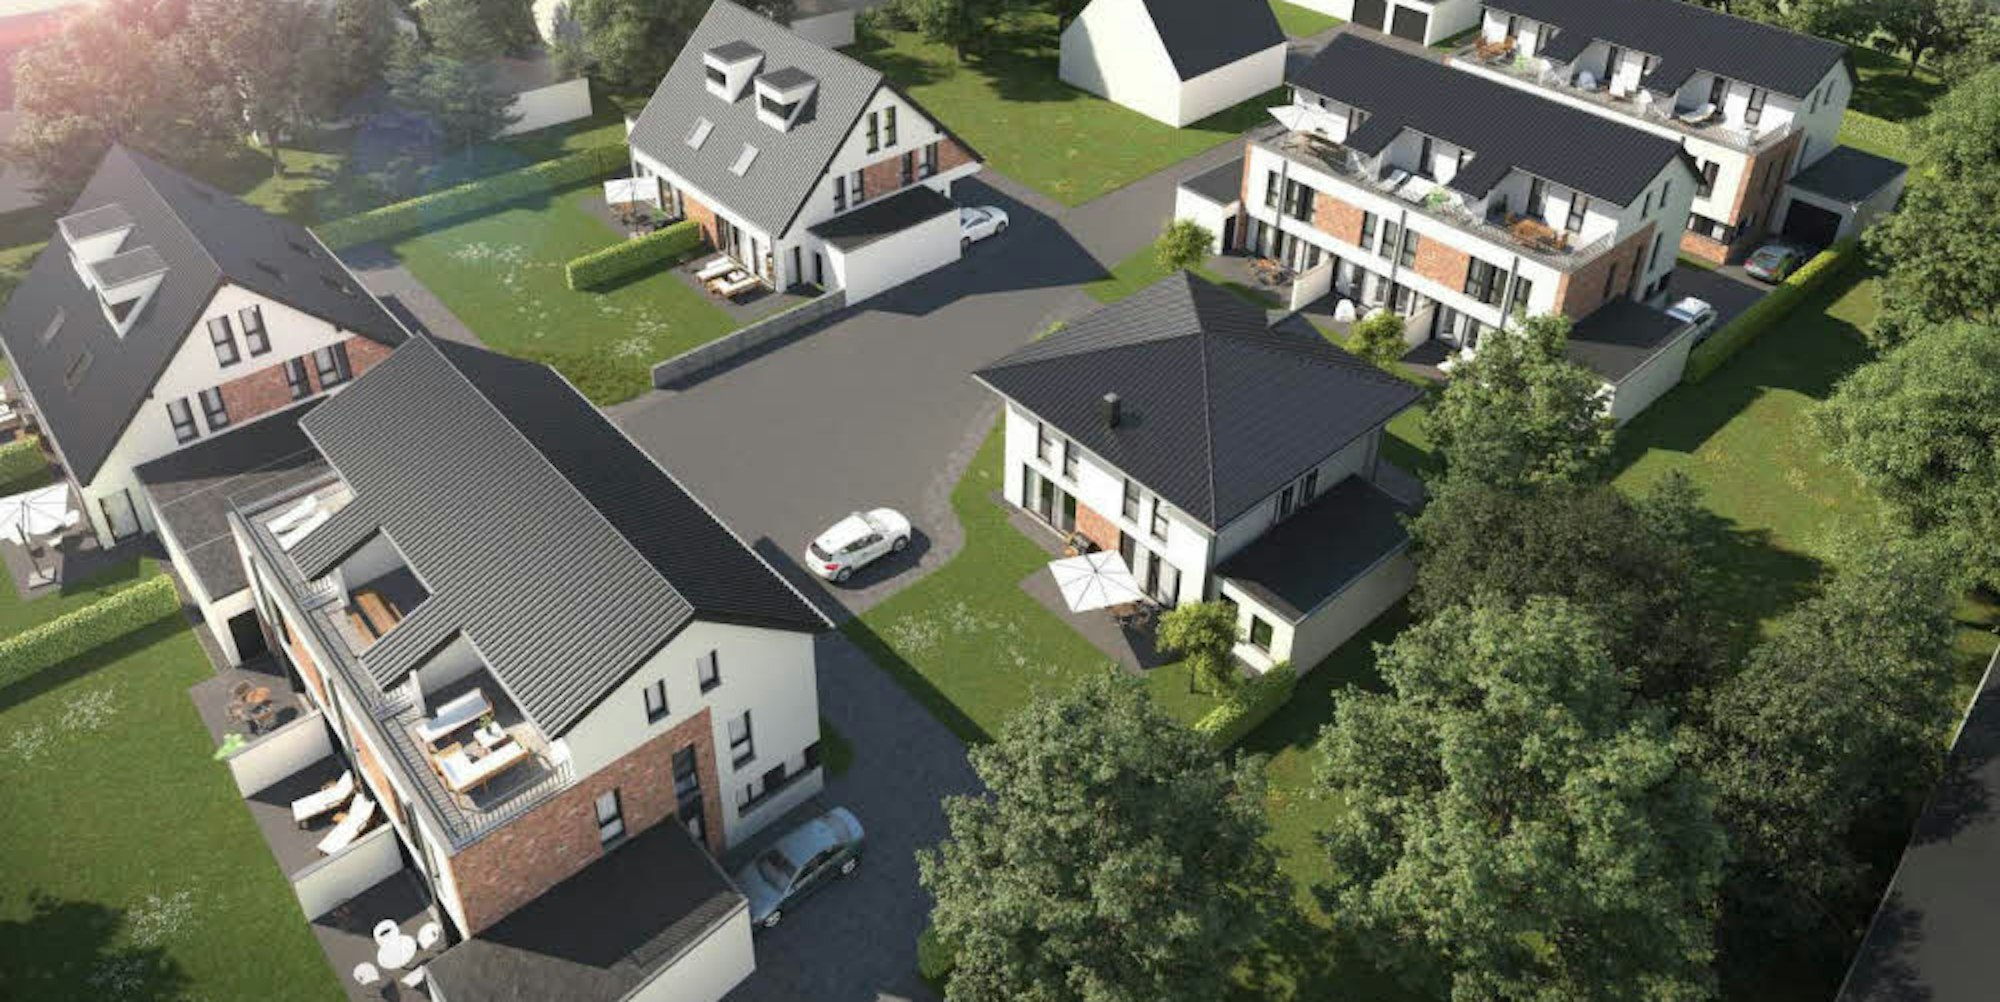 Ein kleines, aber feines Neubaugebiet soll in Bedburg-Kaster entstehen.Doppelhaushälften und Reihenhäuser sowie ein freistehendes Haus sollen Paaren und jungen Familien Wohnraum bieten.